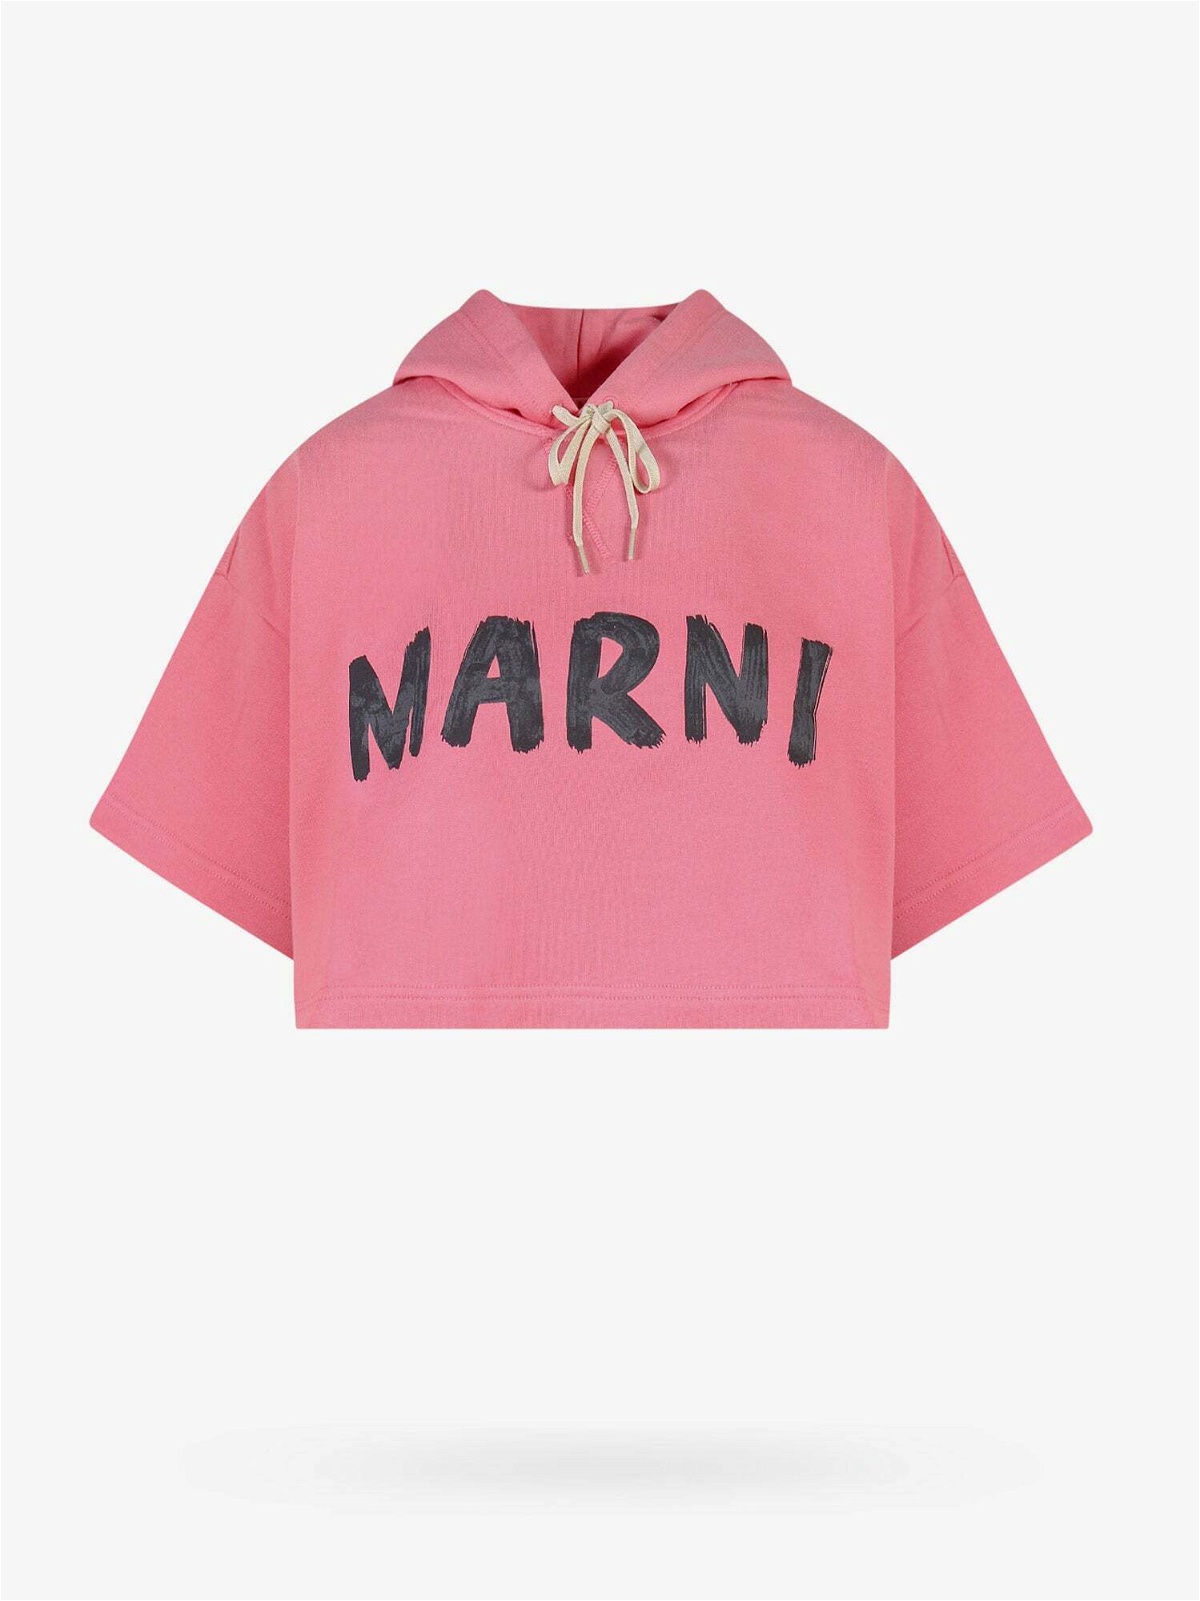 Marni Sweatshirt Pink Womens Marni